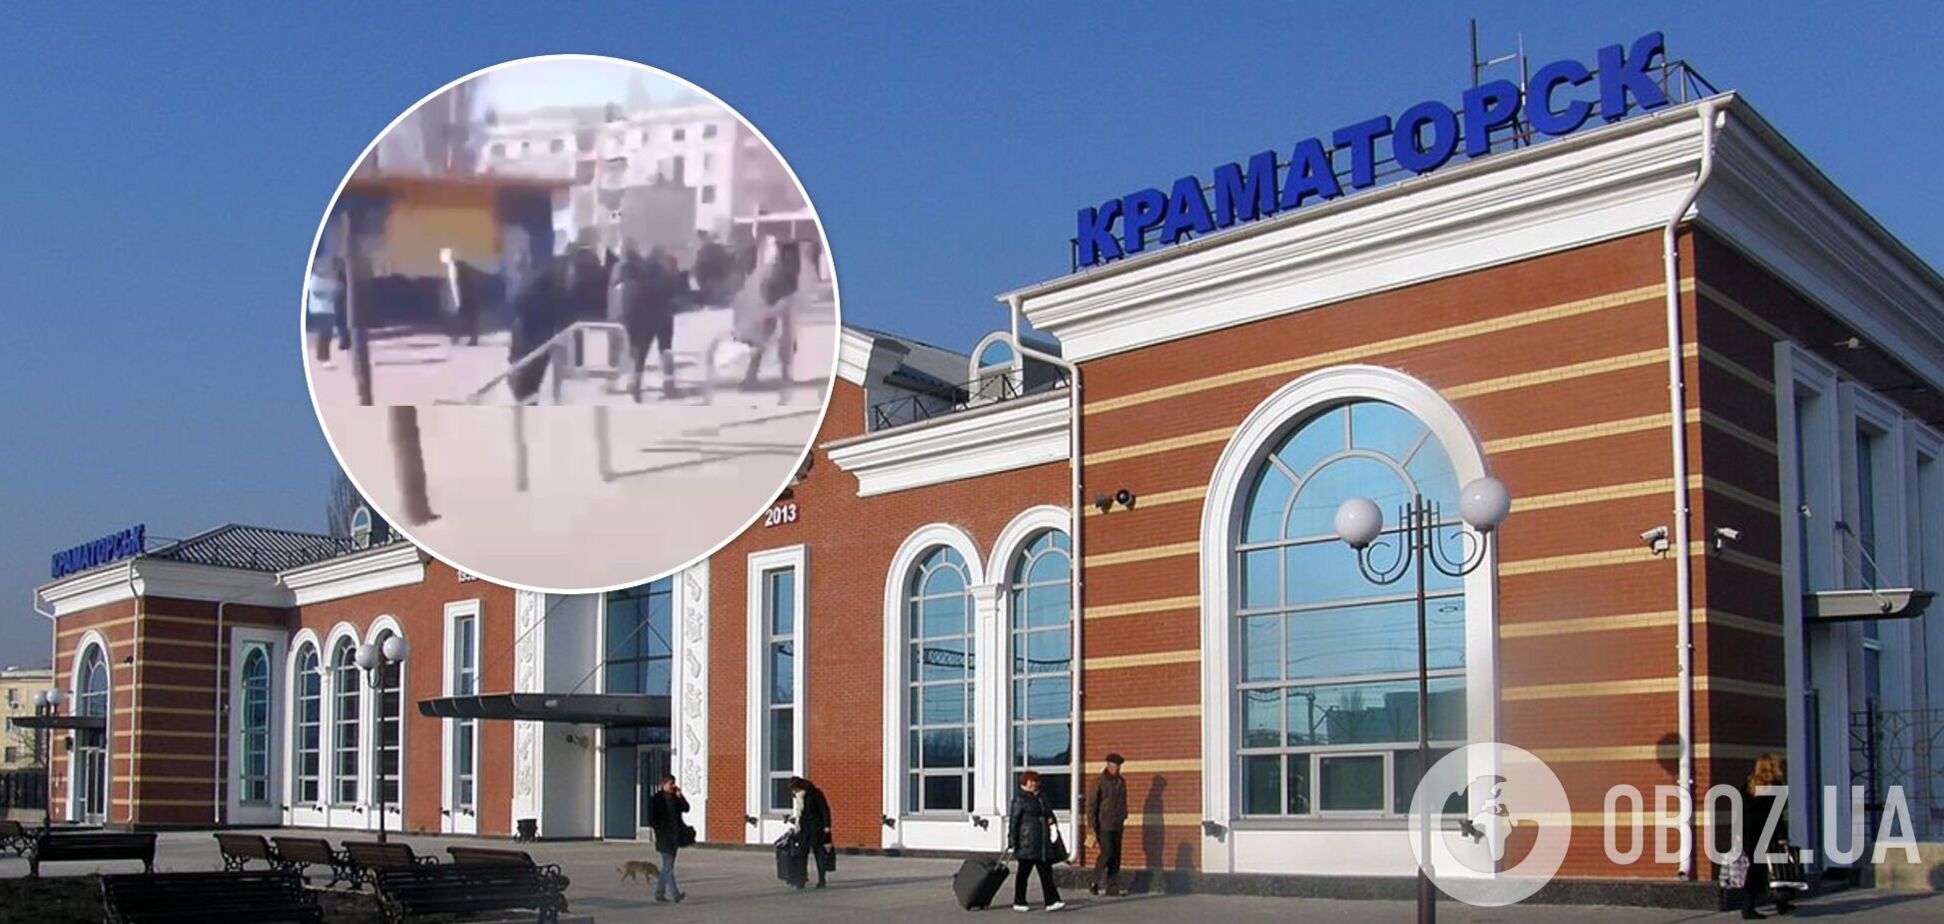 Лунали дикі крики: з'явилися кадри з вокзалу в Краматорську одразу після вибуху. Відео 18+